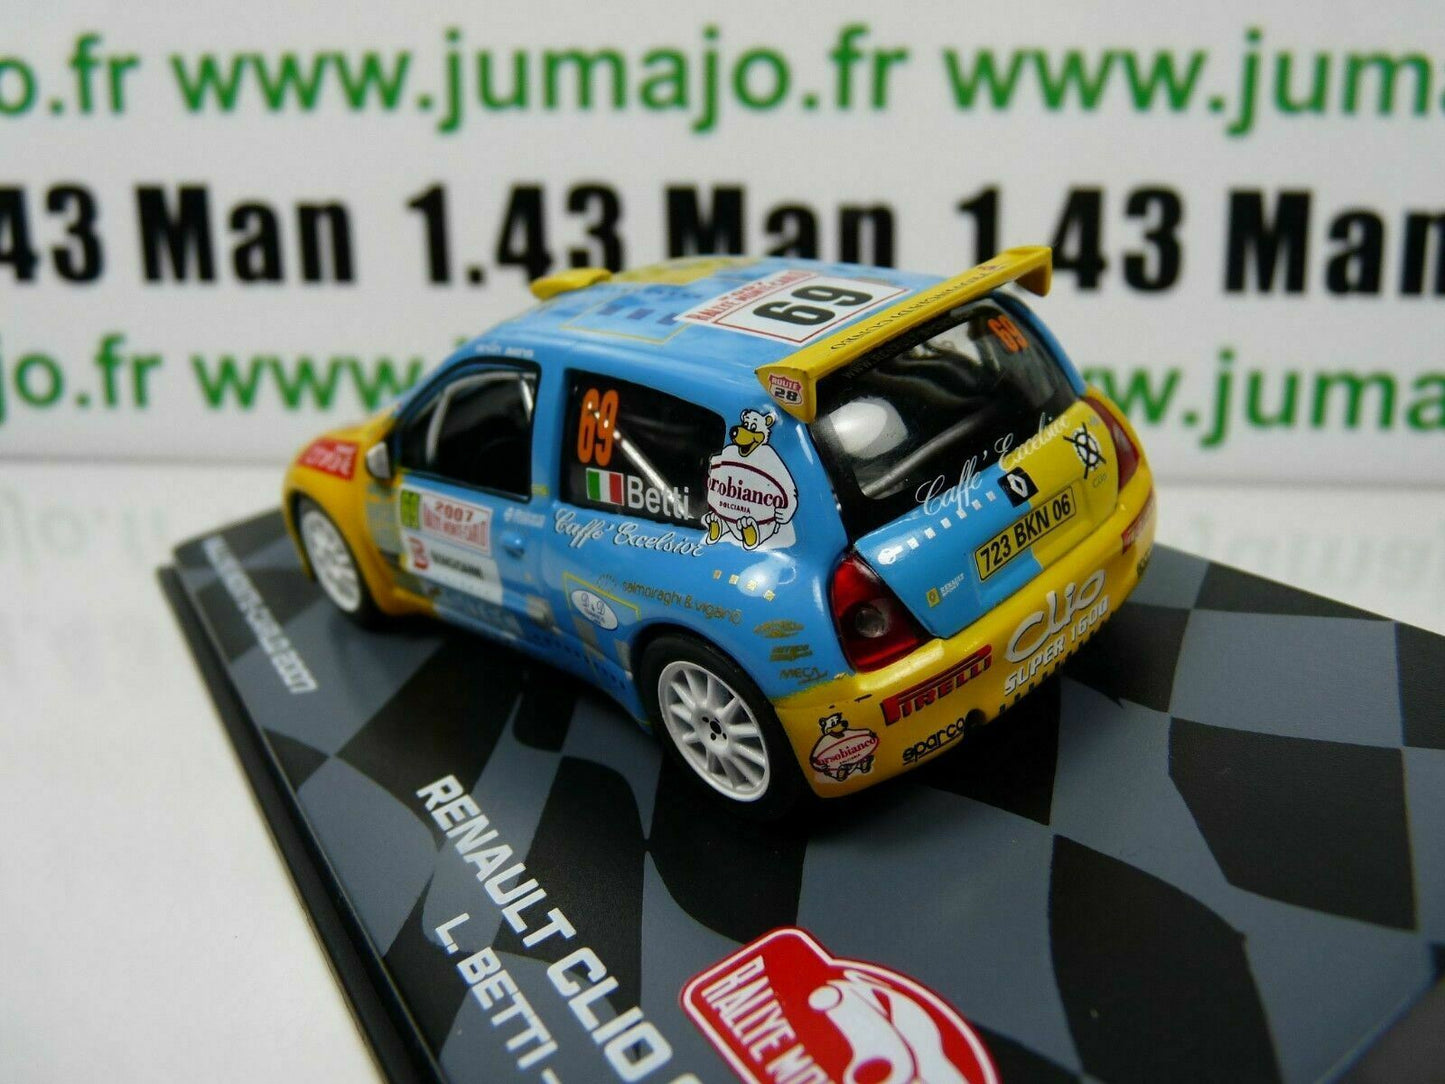 RMIT9 1/43 IXO Rallye Monte Carlo : RENAULT CLIO S1600 L.Betti / G.Agnese 2007